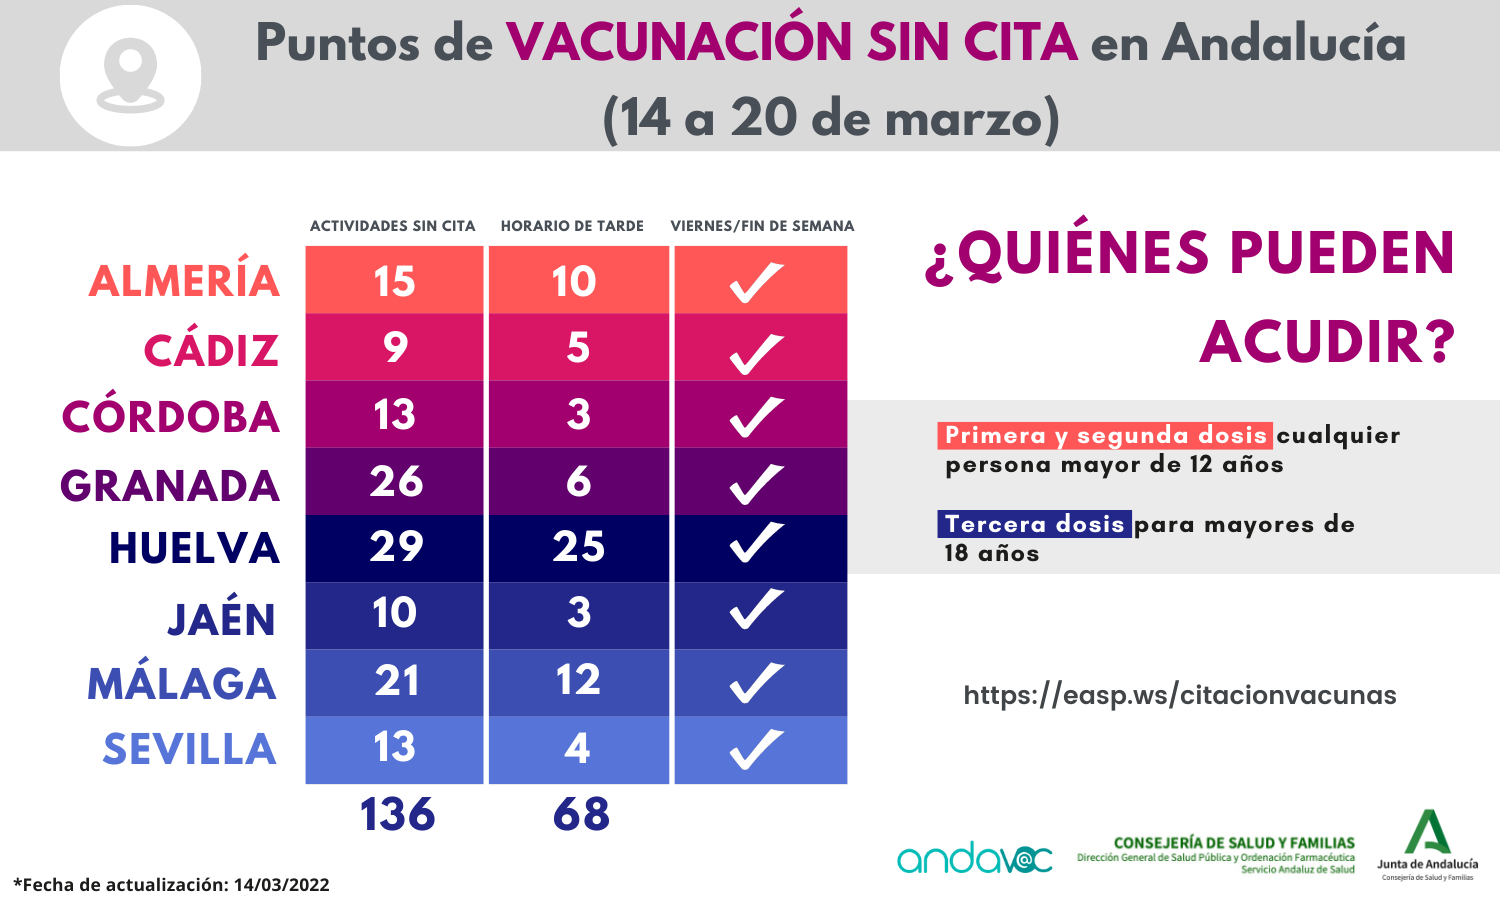 Puntos de vacunación COVID-19 sin cita en Andalucía